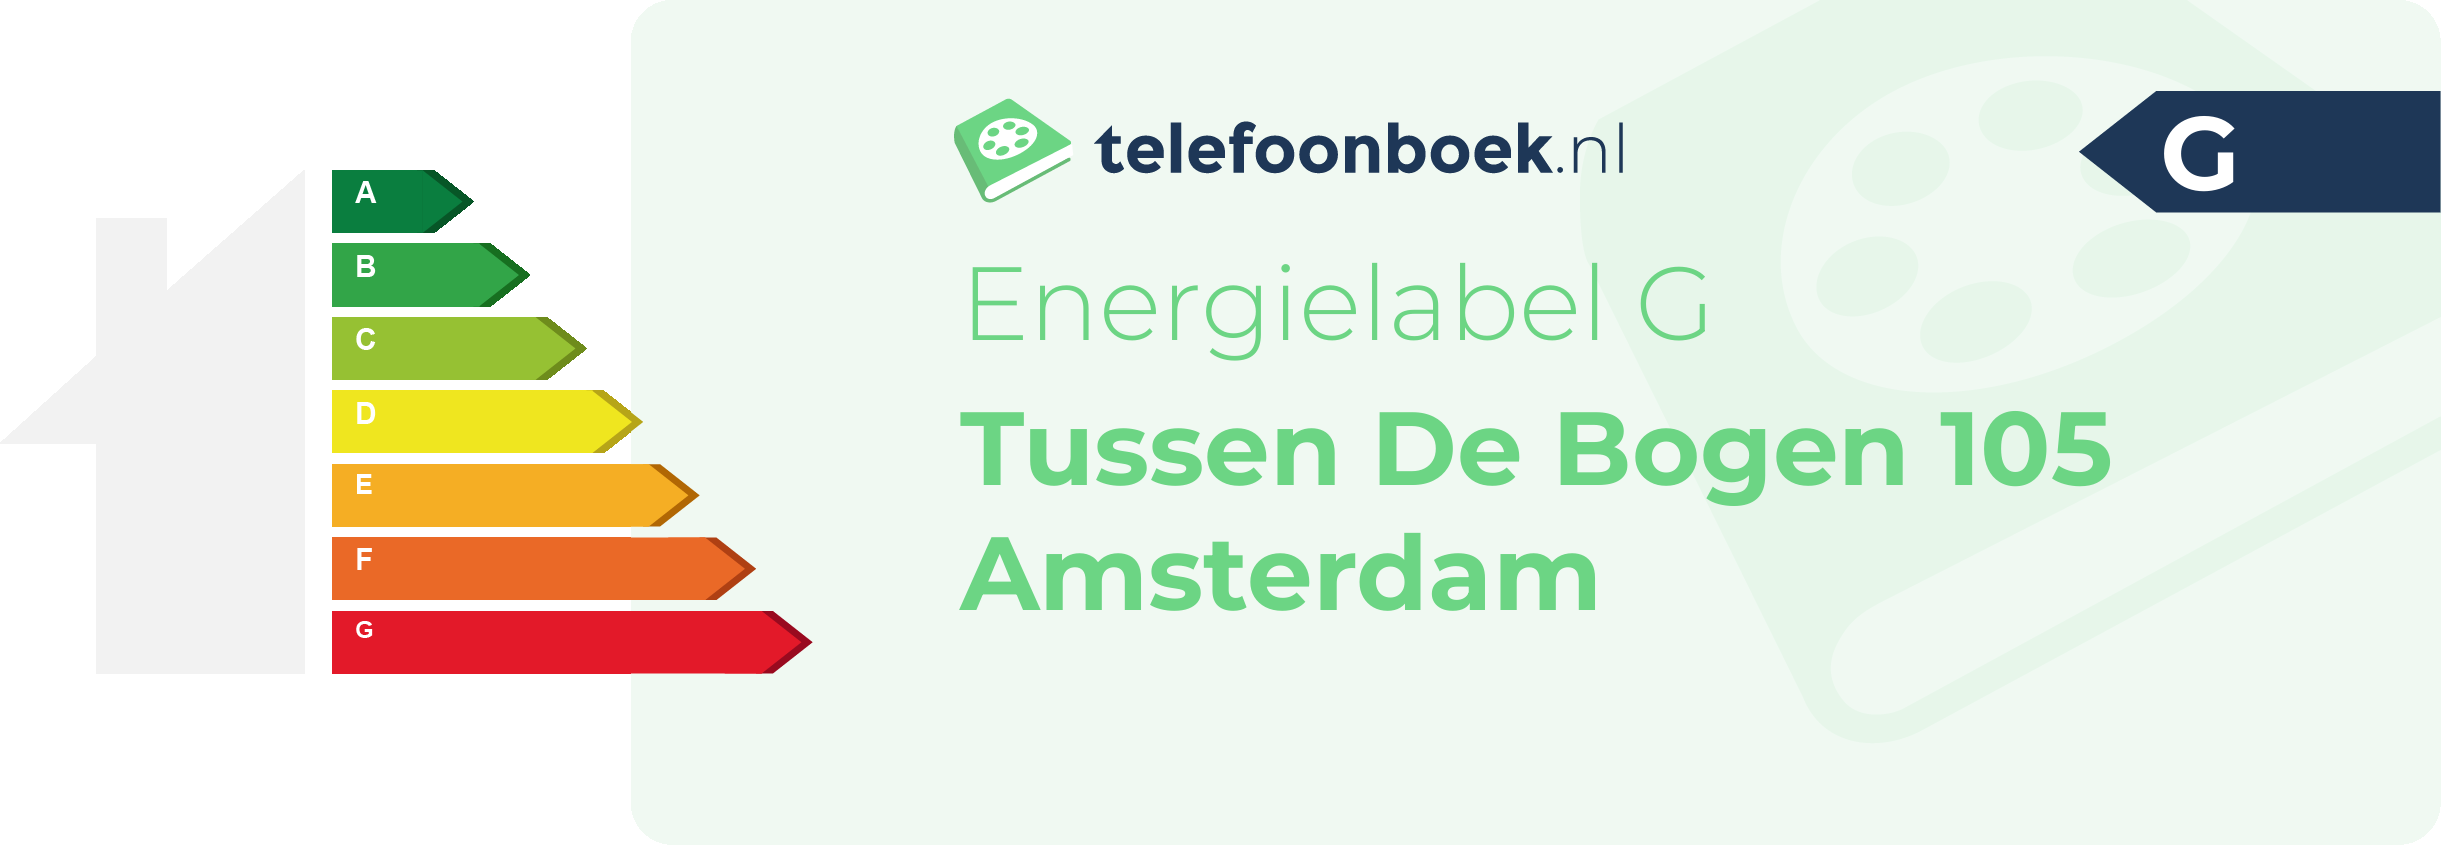 Energielabel Tussen De Bogen 105 Amsterdam